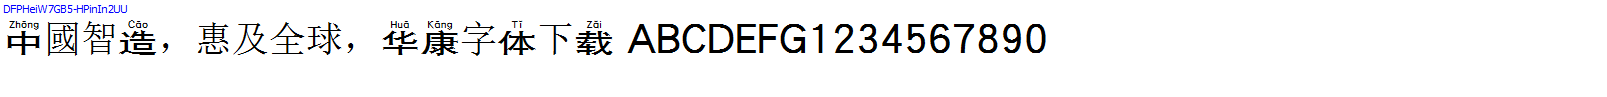 華康字體DFPHeiW7GB5-HPinIn2UU.TTF